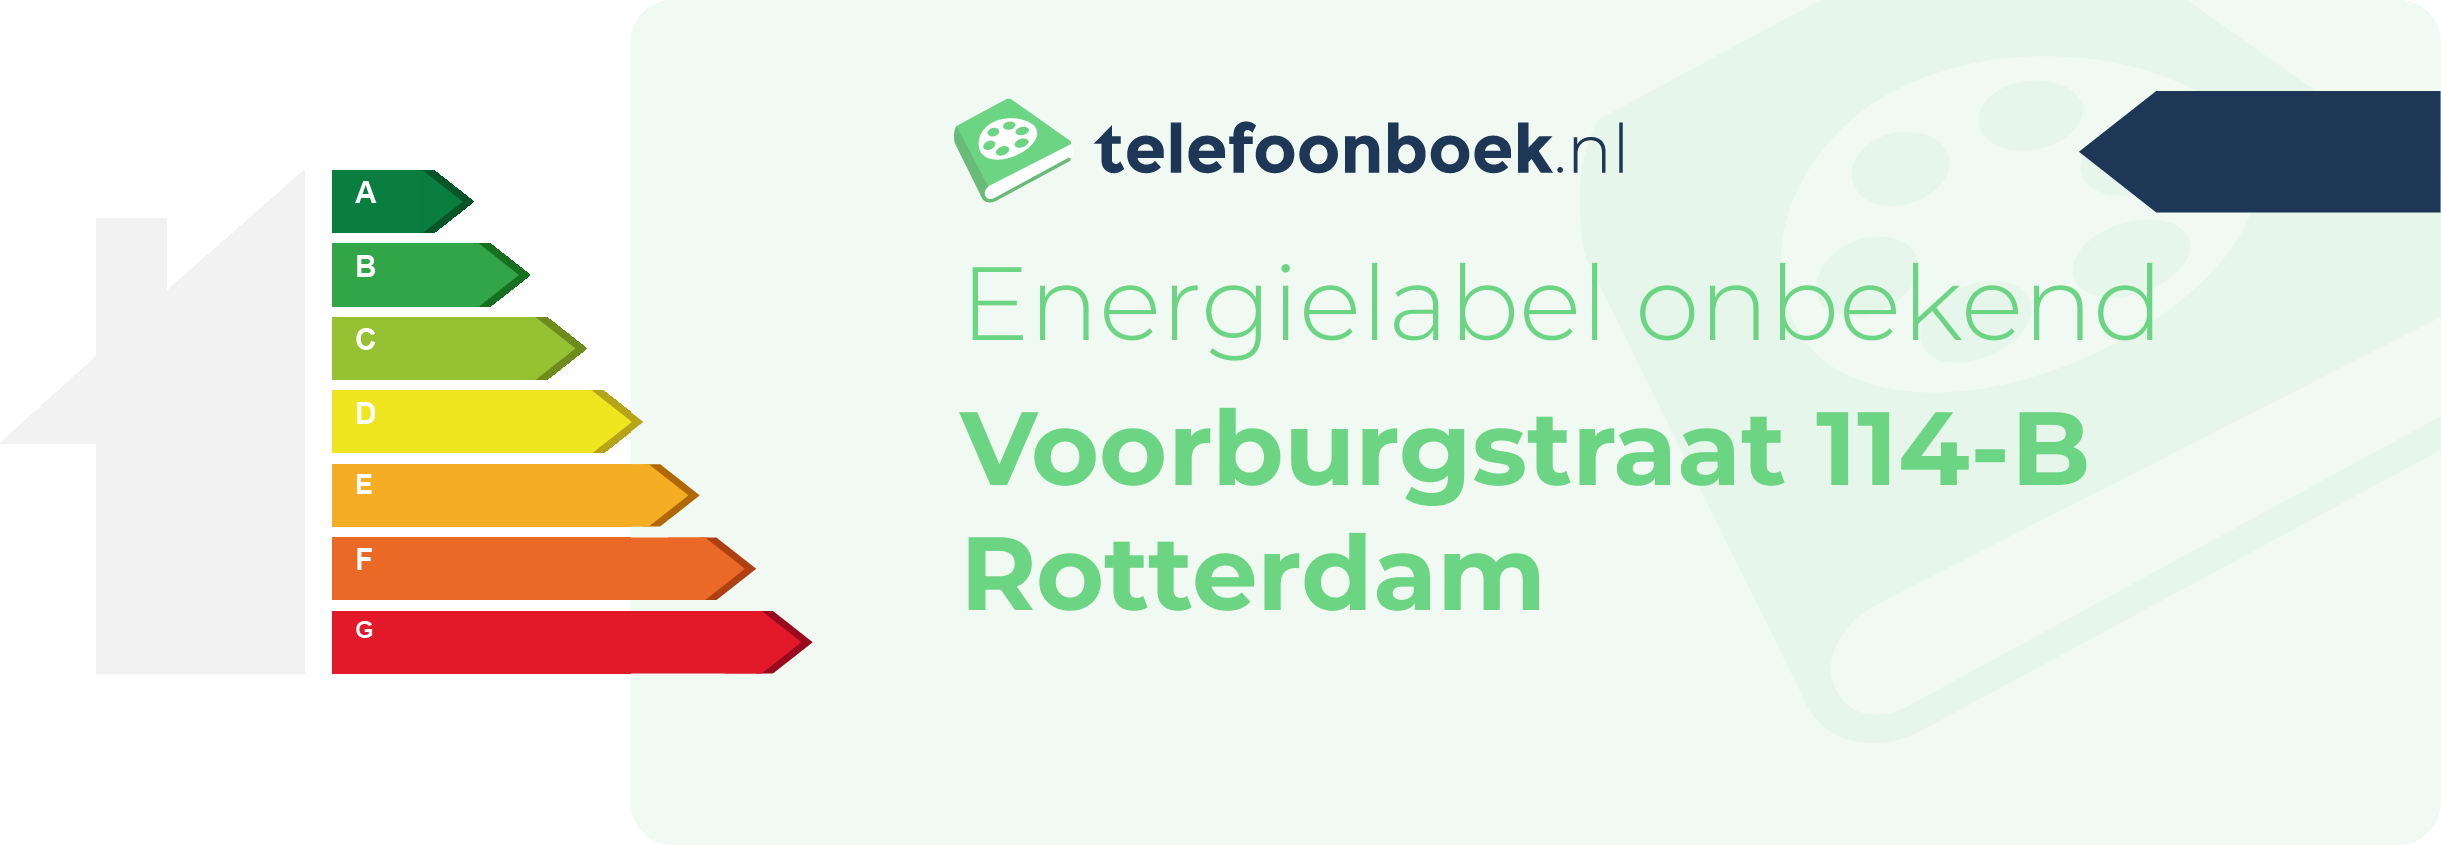 Energielabel Voorburgstraat 114-B Rotterdam